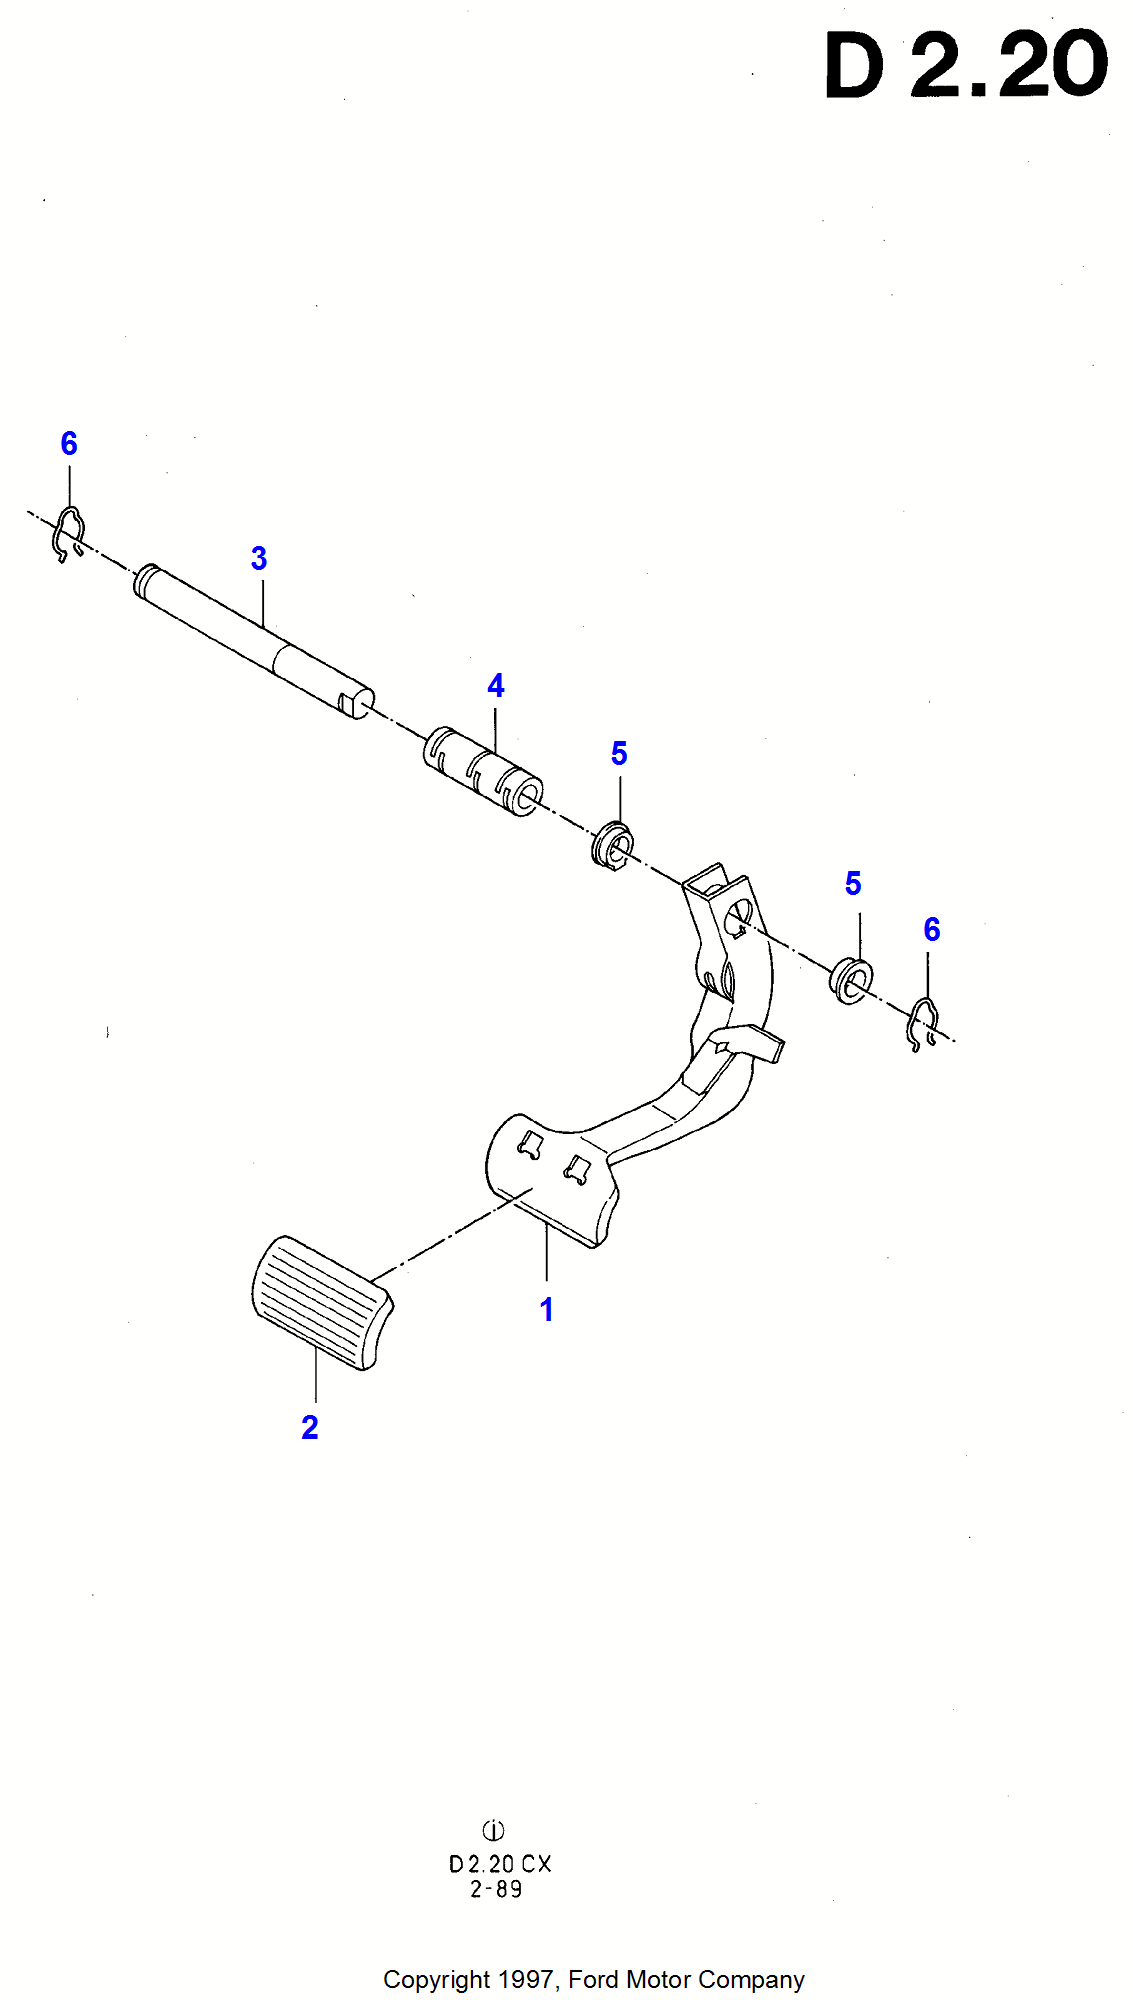 Brake Pedal per Ford Fiesta Fiesta 1989-1996               (CX)